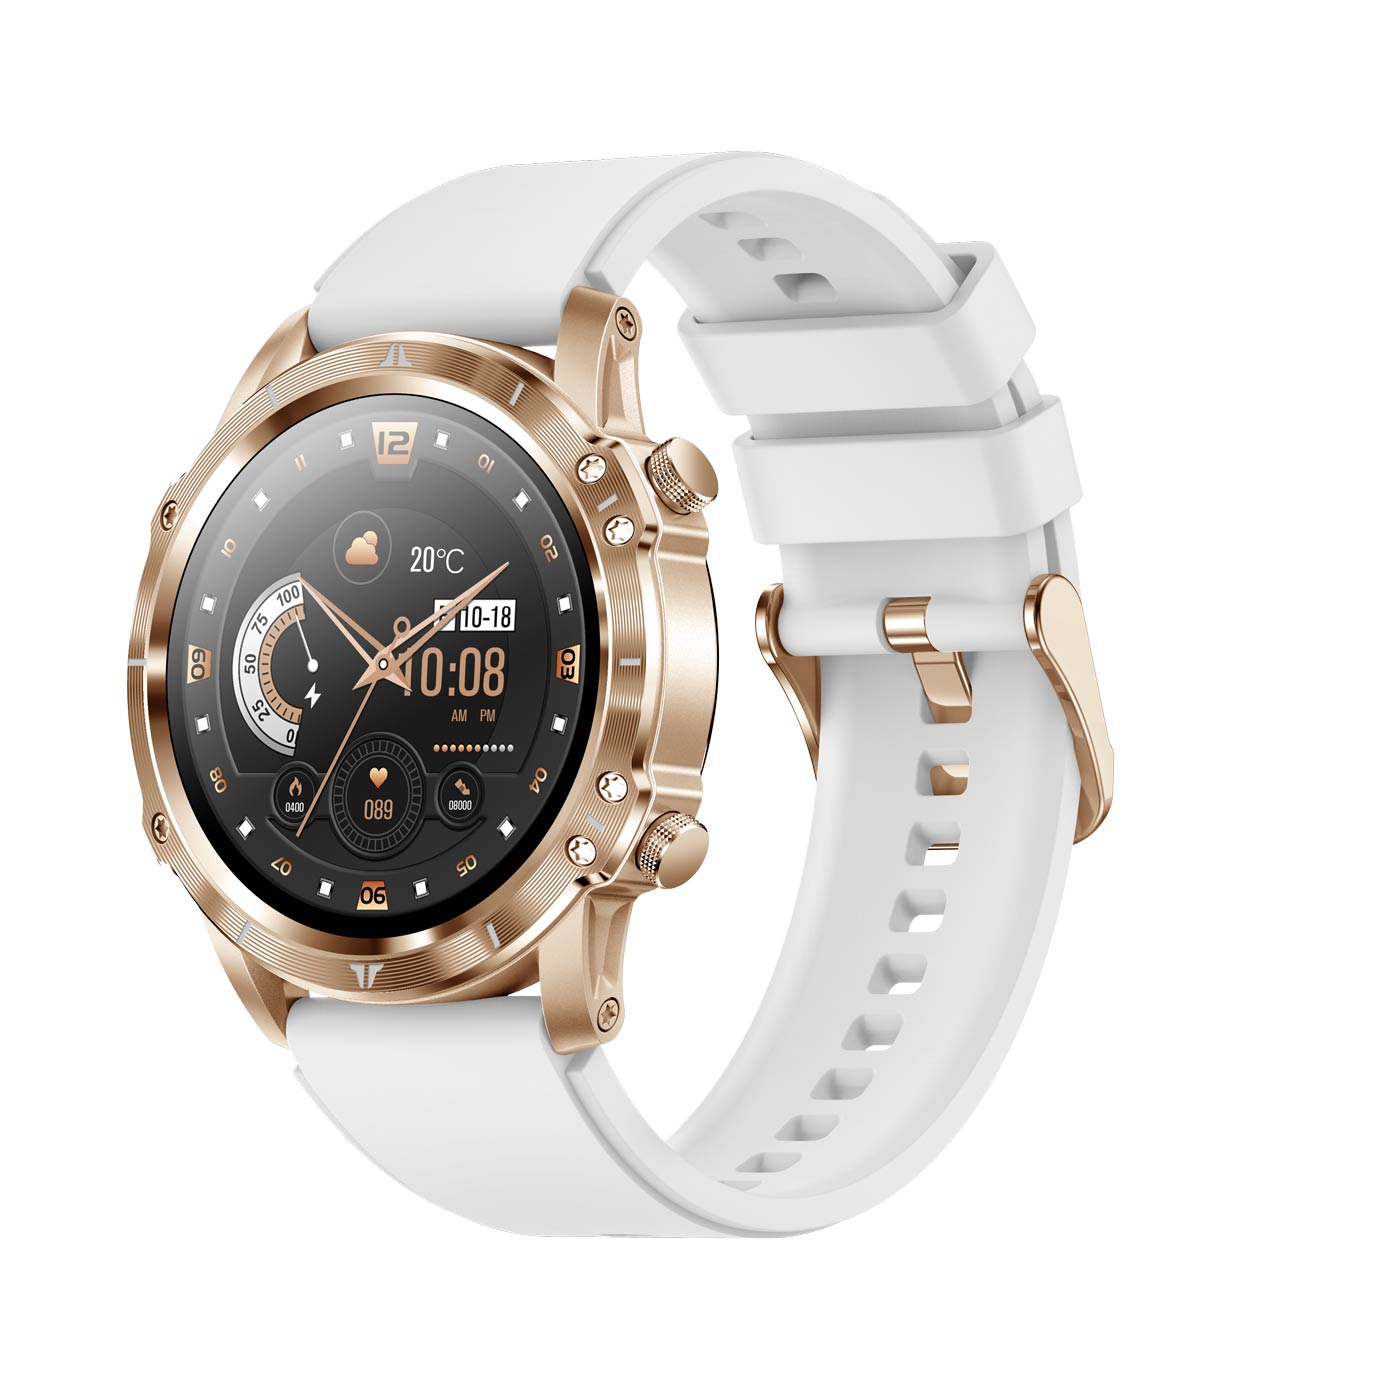 CARNEO gold, Adventure HR+ gold Smartwatch,